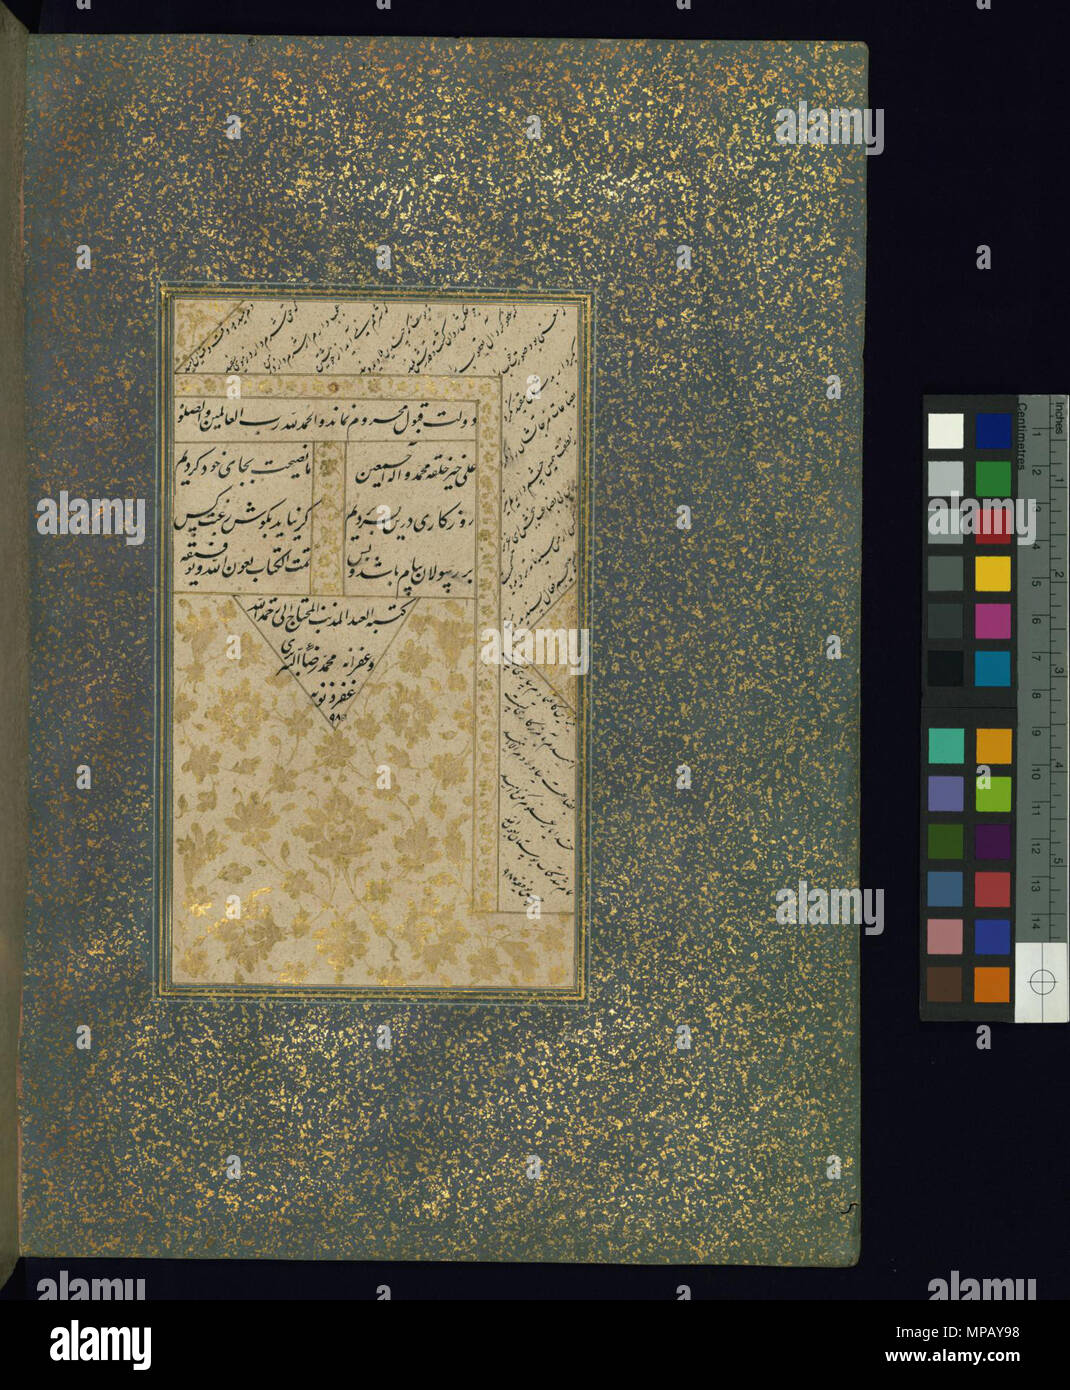 Colophon . Anglais : Ce folio de Walters manuscrit W.619 contient un colophon en arabe contenant le nom du scribe et la date de la copie. . 1572 Hijri历 (AD980) (période safavide (1501-1722)). 909 Muhammad ibn Ahmad 'Assar Tabrizi - Colophon - Walters W619154B - Page complète Banque D'Images